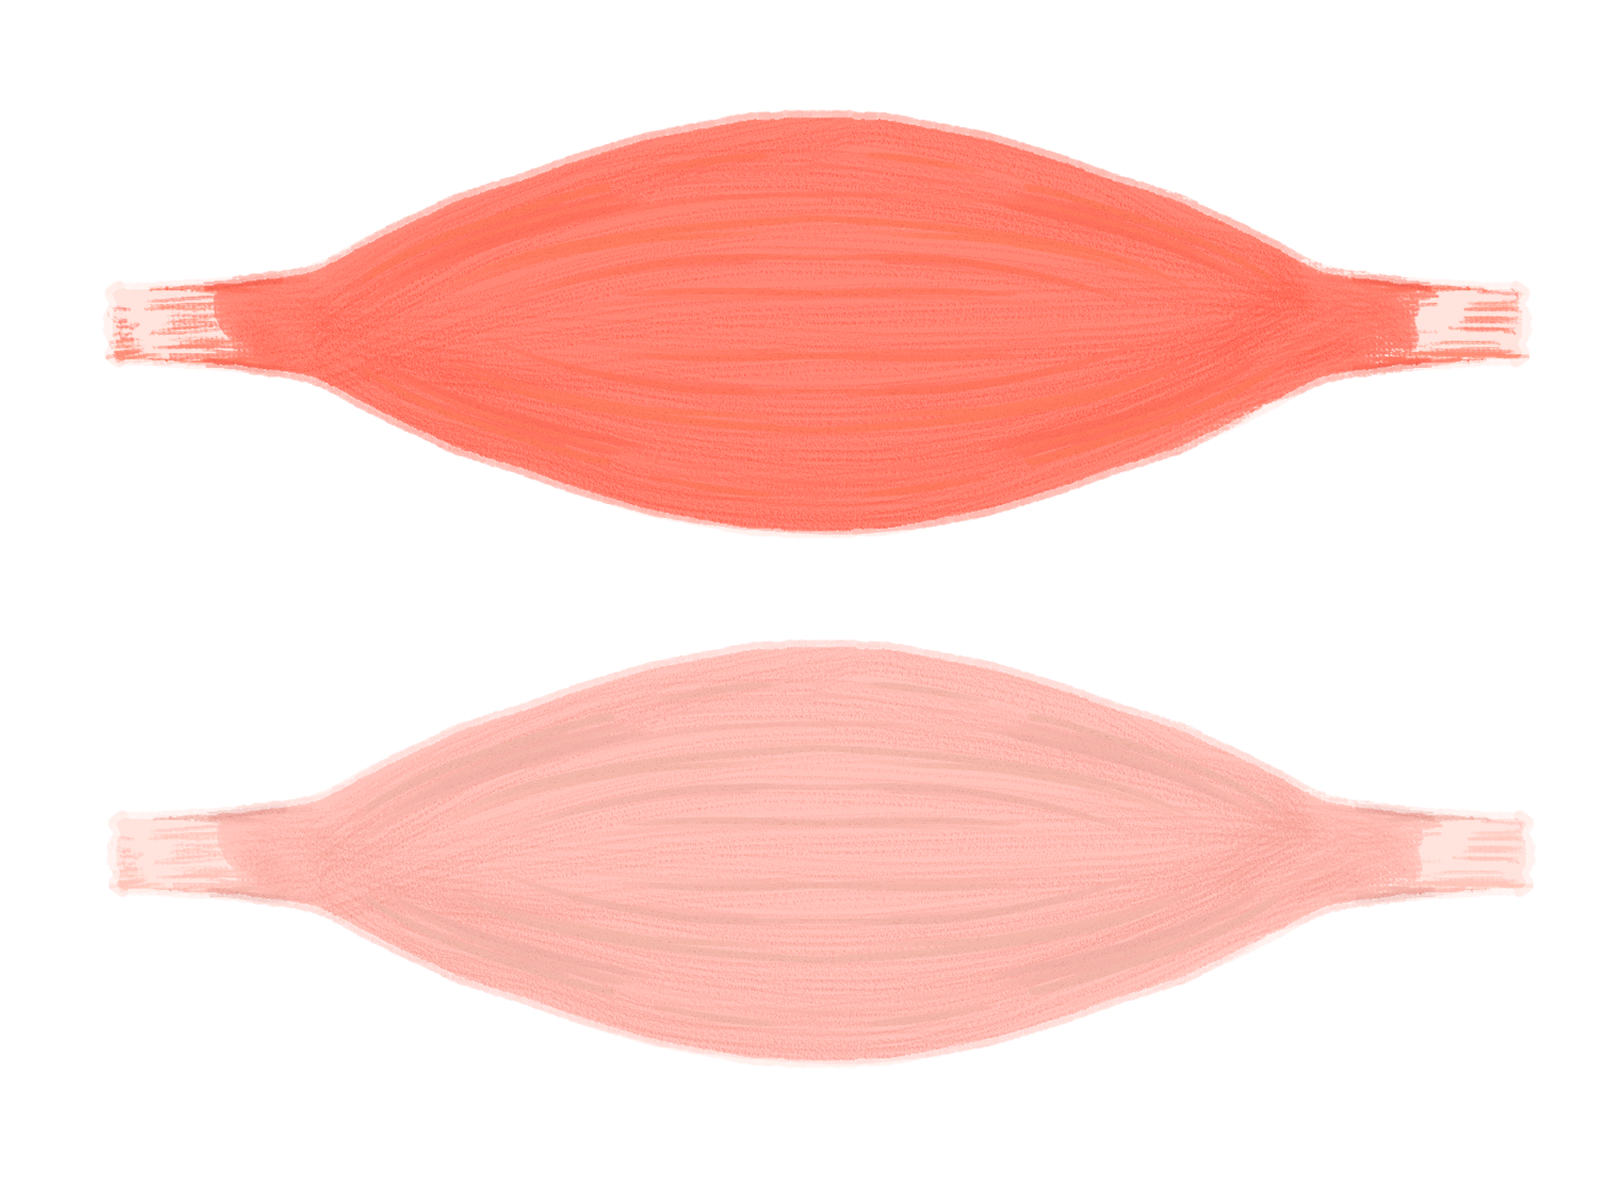 遅筋繊維(赤)と速筋繊維(白)